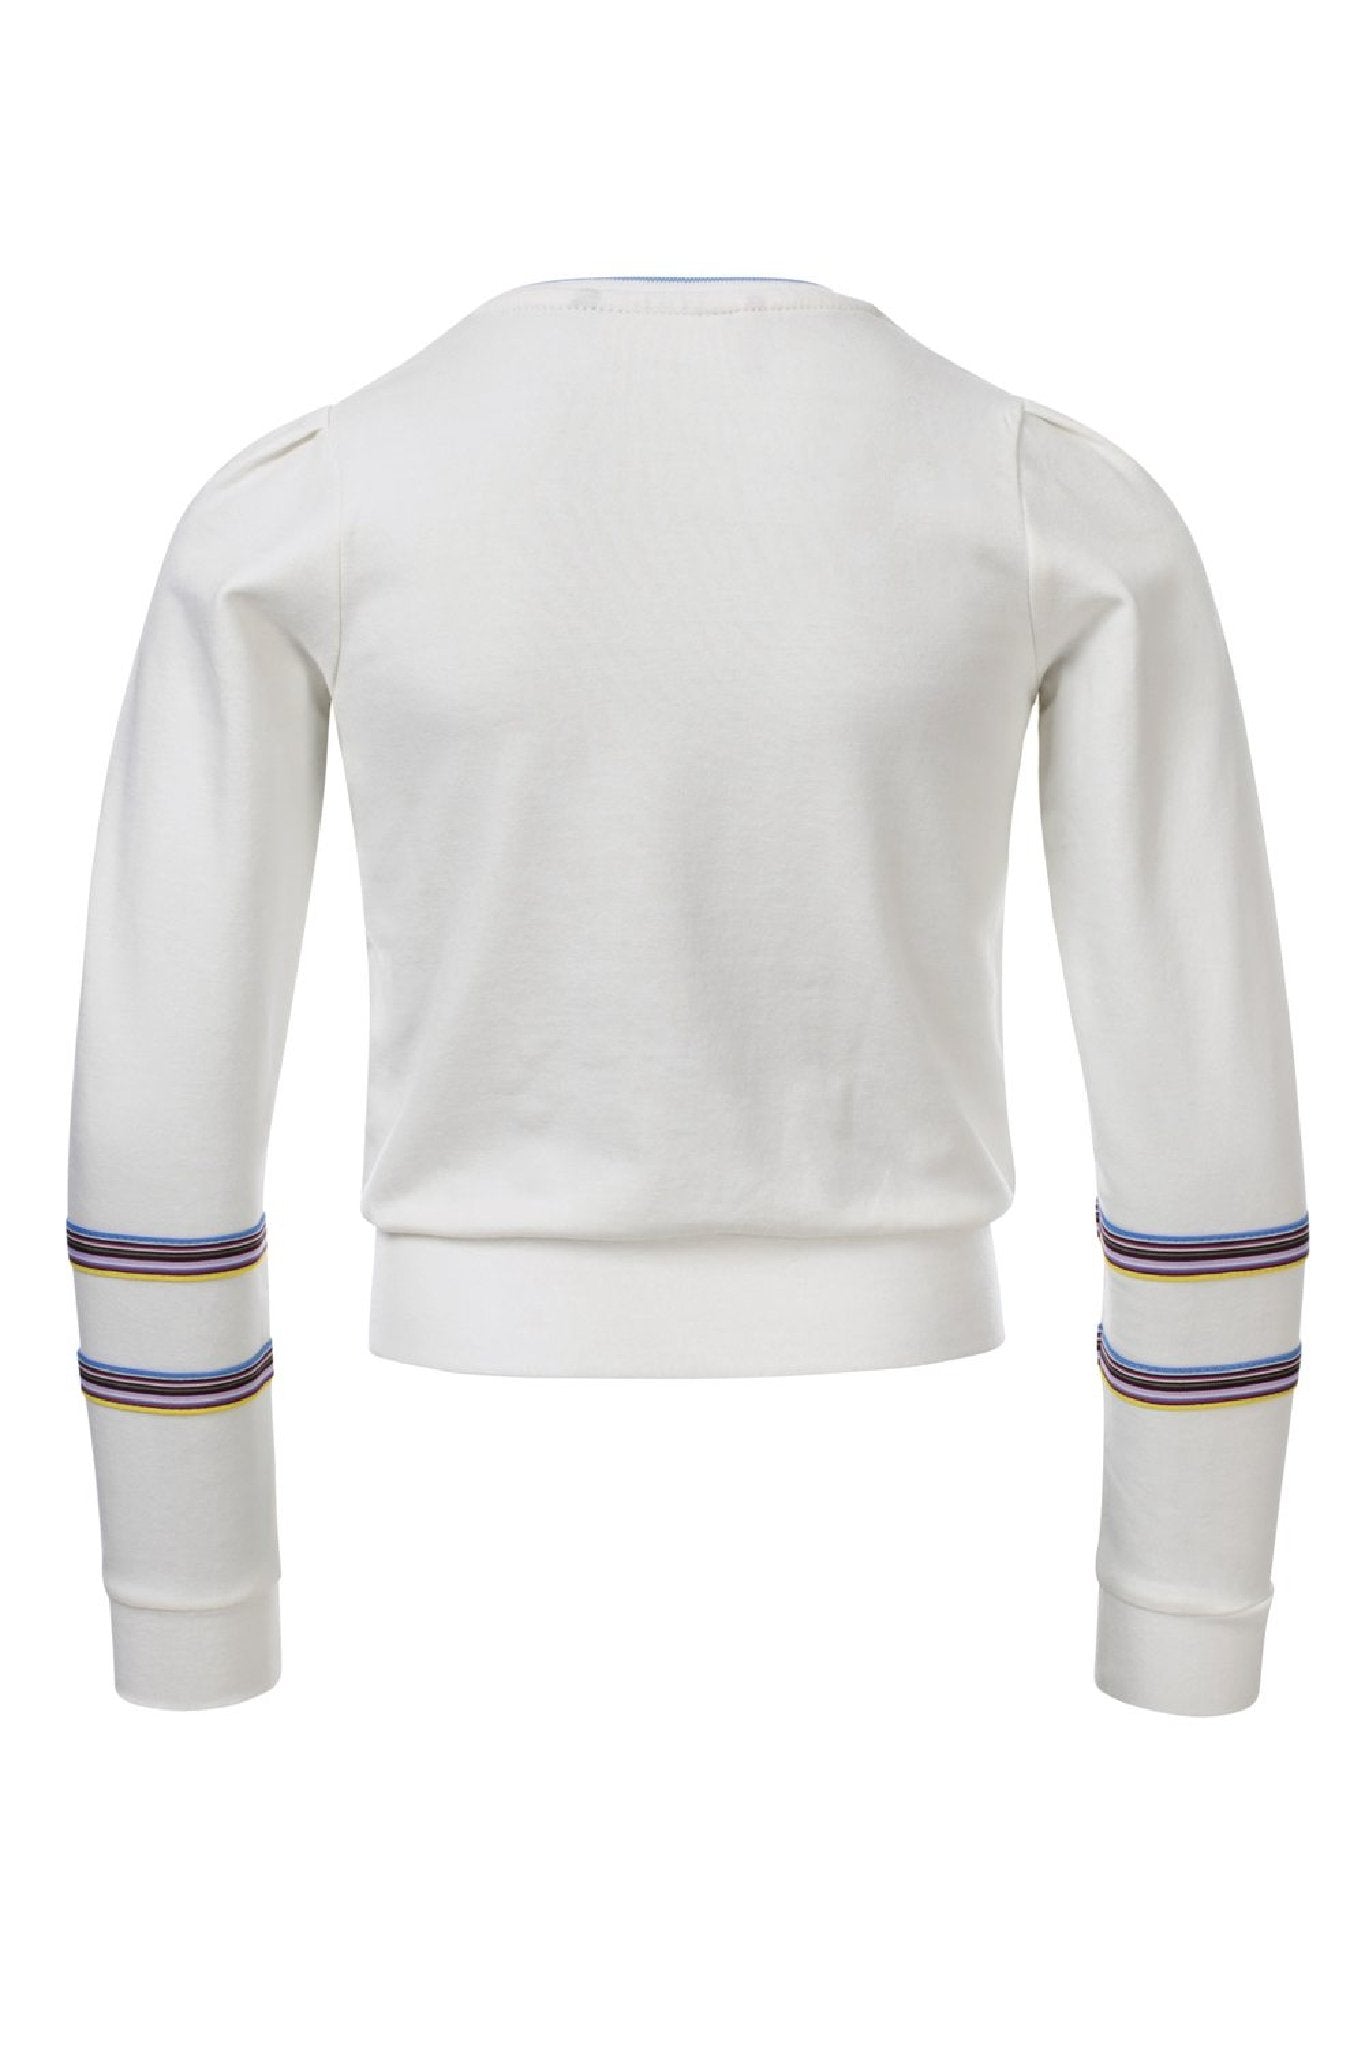 Meisjes Girls Sweater van Looxs in de kleur Off White in maat 164.